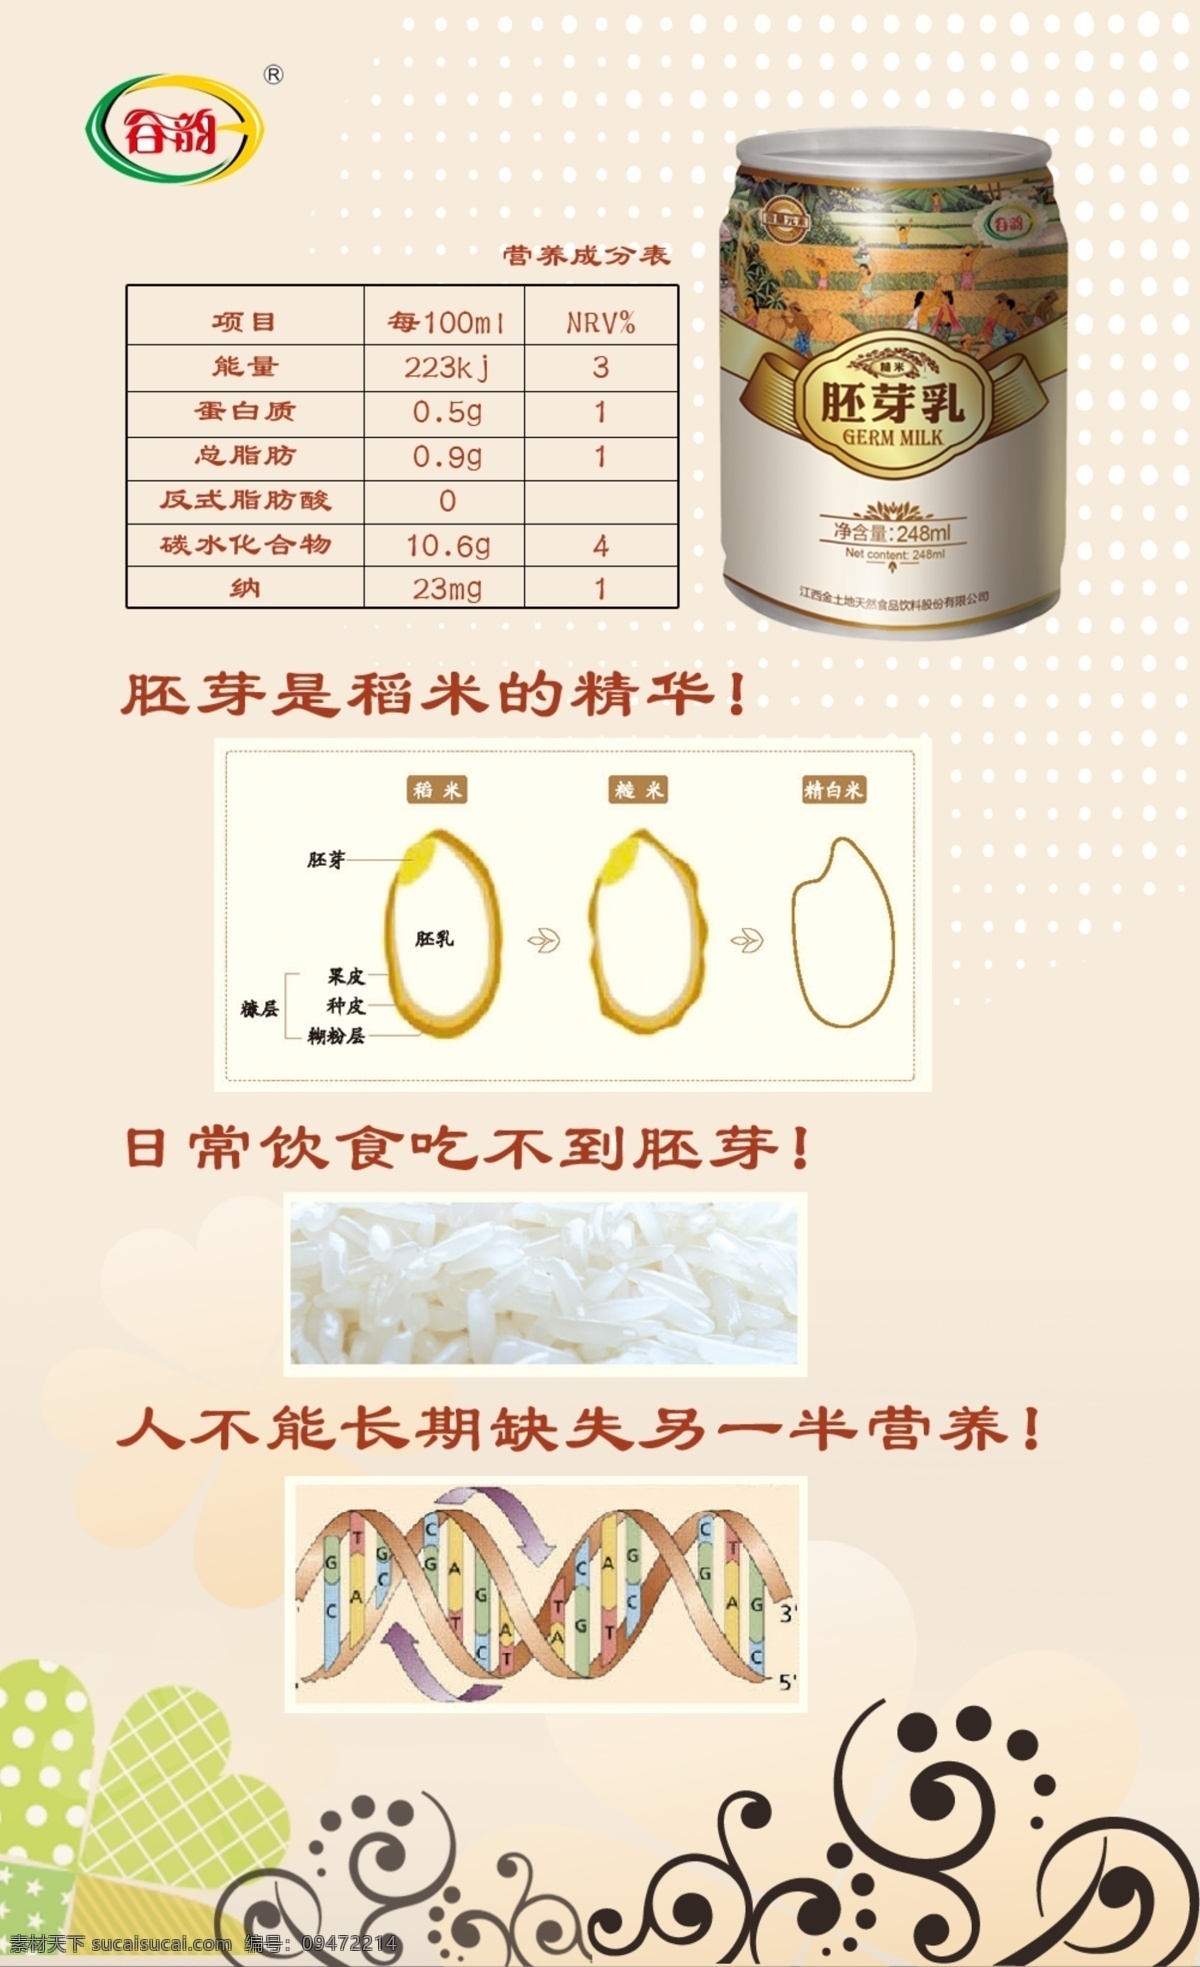 饮料 营养 分析 胚牙 功效 胚芽米 营养表格 米胚 包装设计